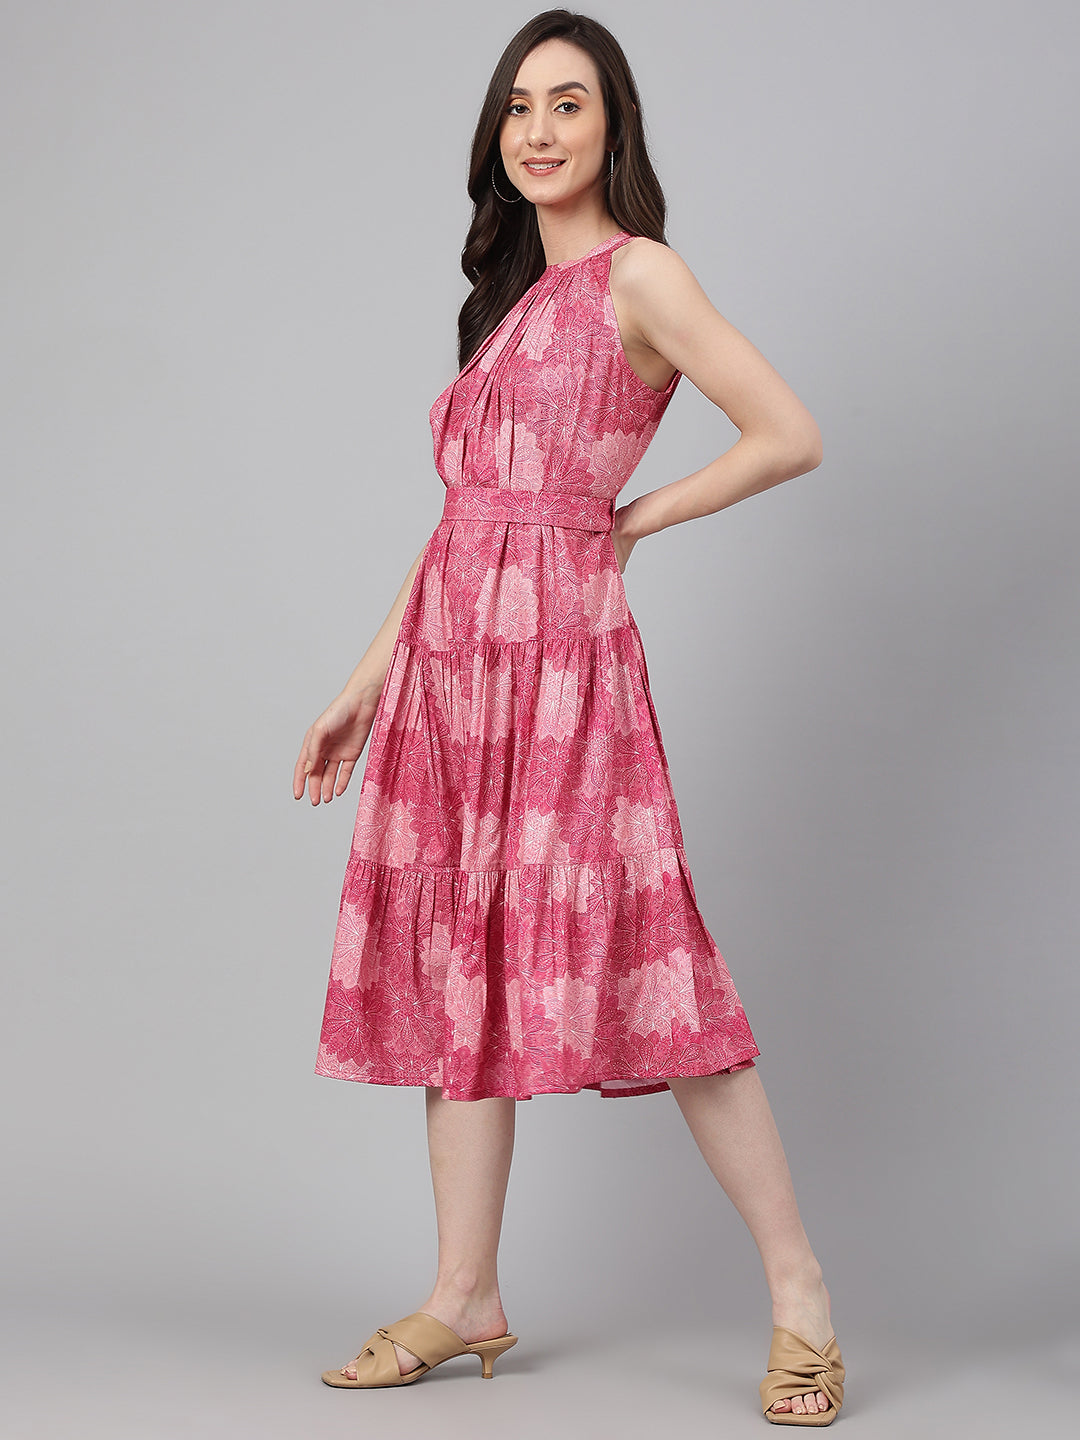 Women's Digital Printed Pink Crepe Dress - Janasya